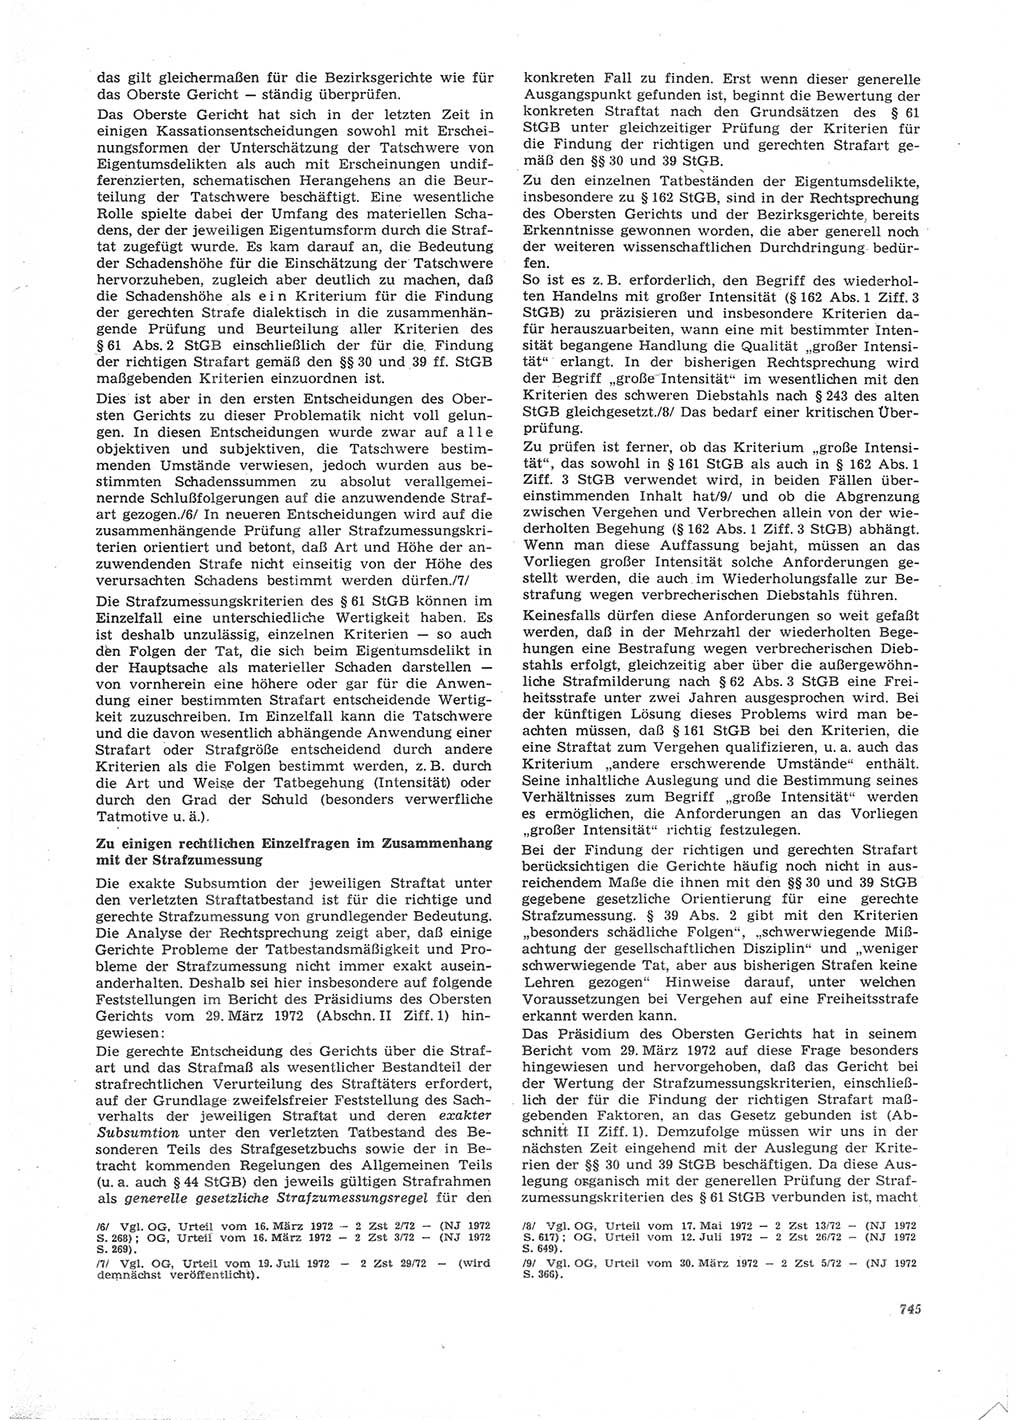 Neue Justiz (NJ), Zeitschrift für Recht und Rechtswissenschaft [Deutsche Demokratische Republik (DDR)], 26. Jahrgang 1972, Seite 745 (NJ DDR 1972, S. 745)